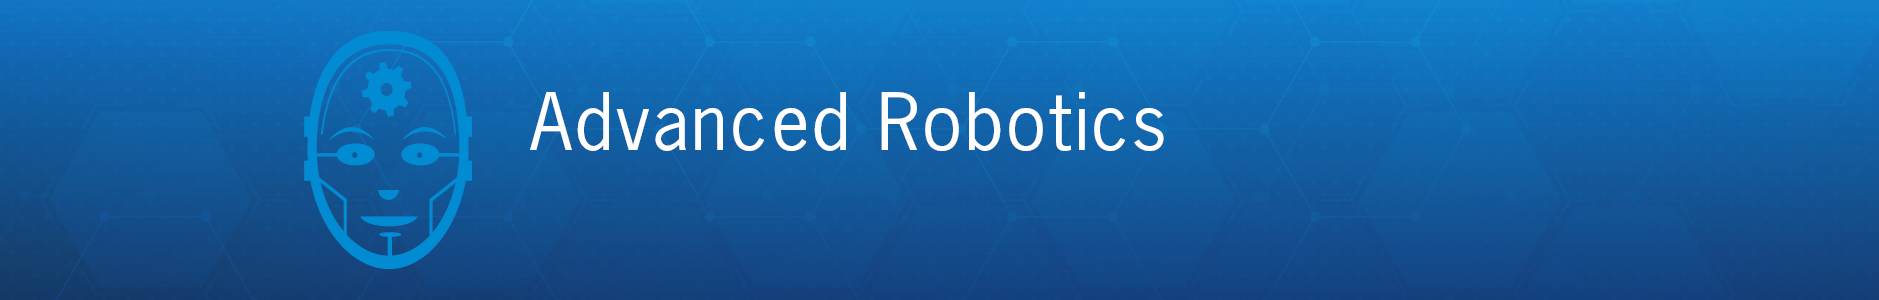 Future Market Advanced Robotics